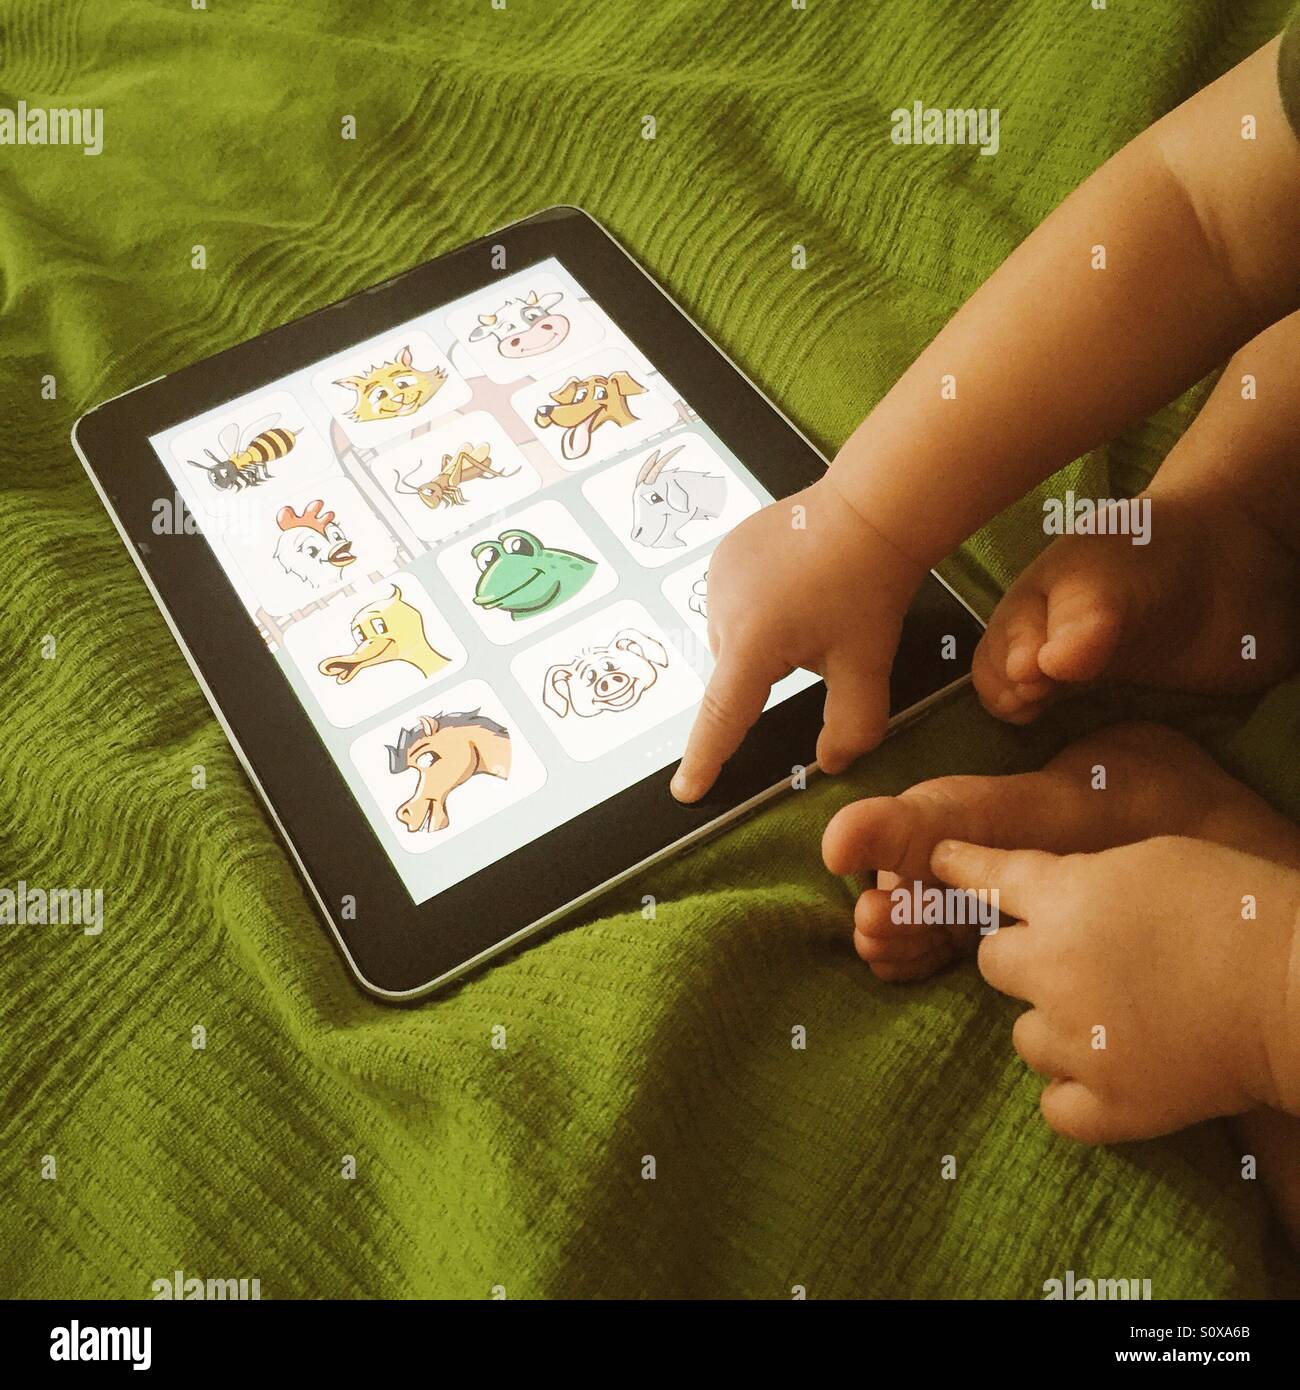 Petit bébé jouant sur la tablette Banque D'Images